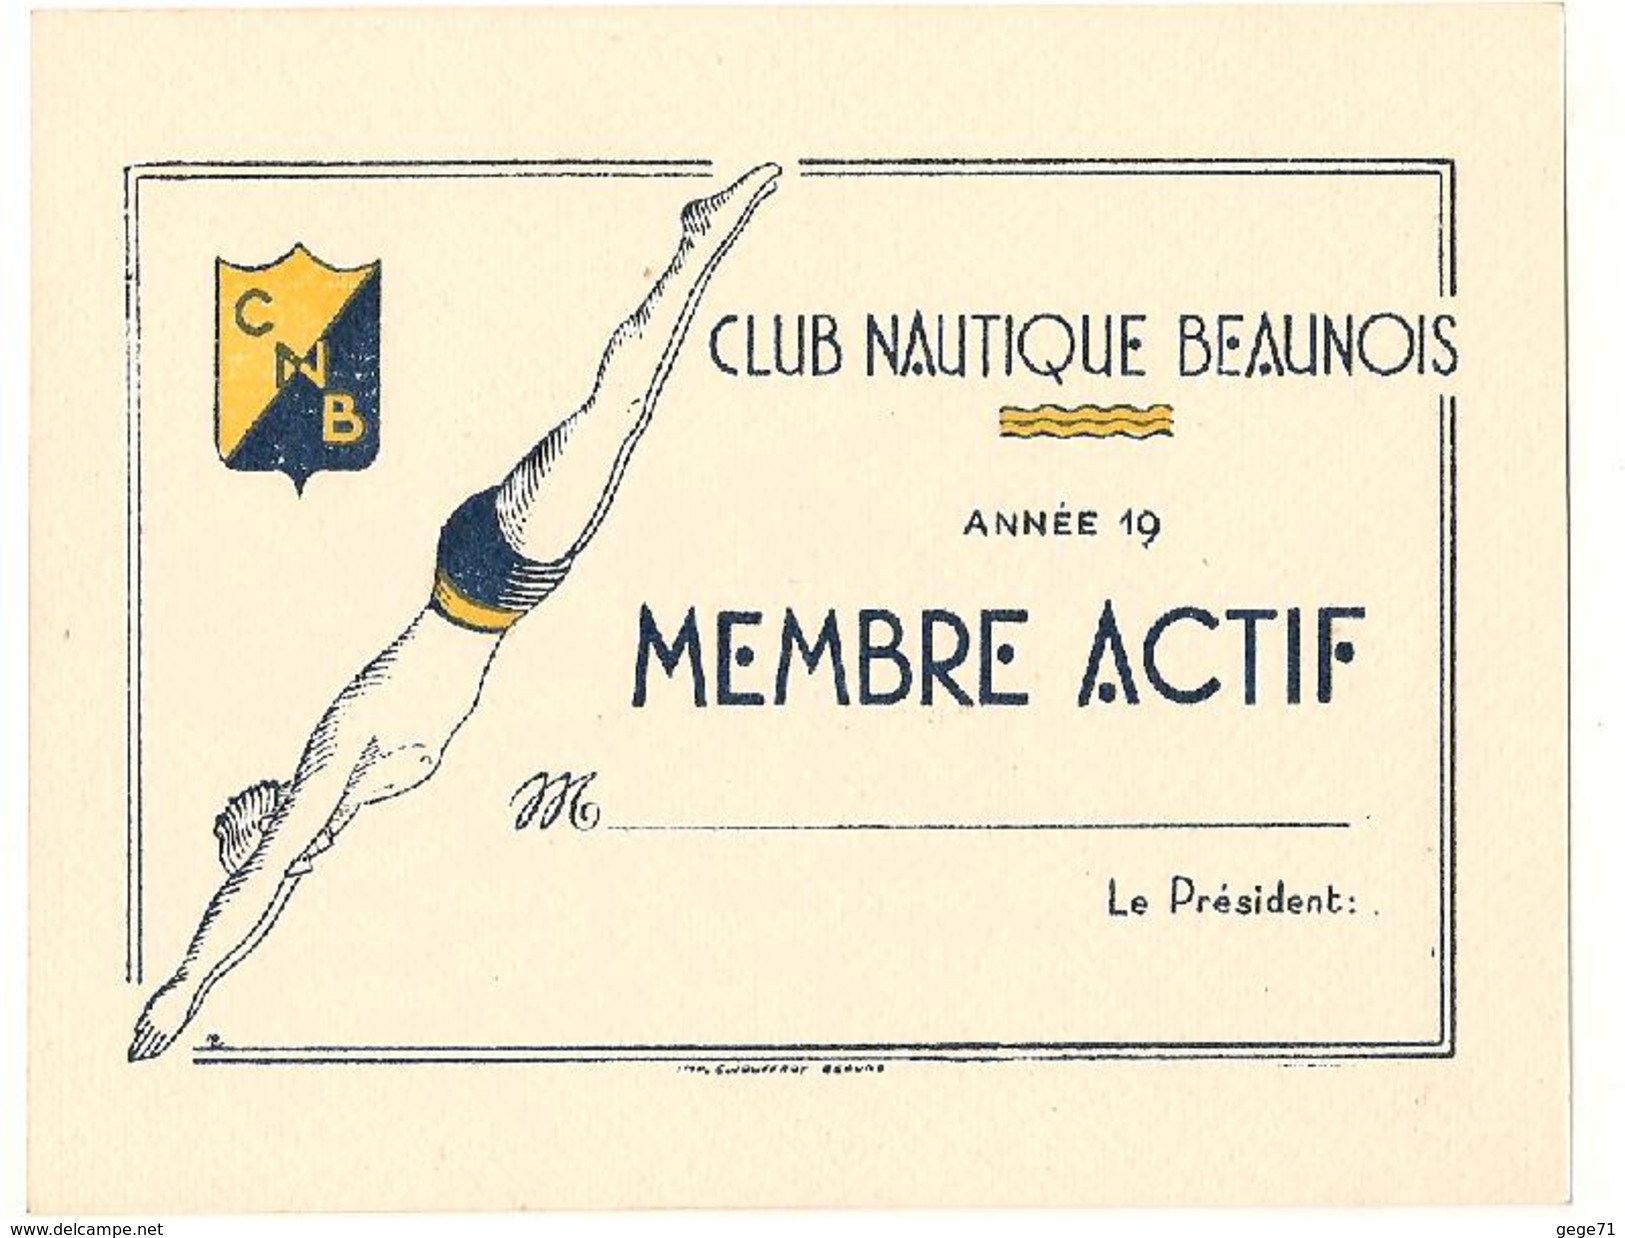 Beaune - Carte Vierge De Natation - Club Nautique Beaunois - Membre Actif - Swimming